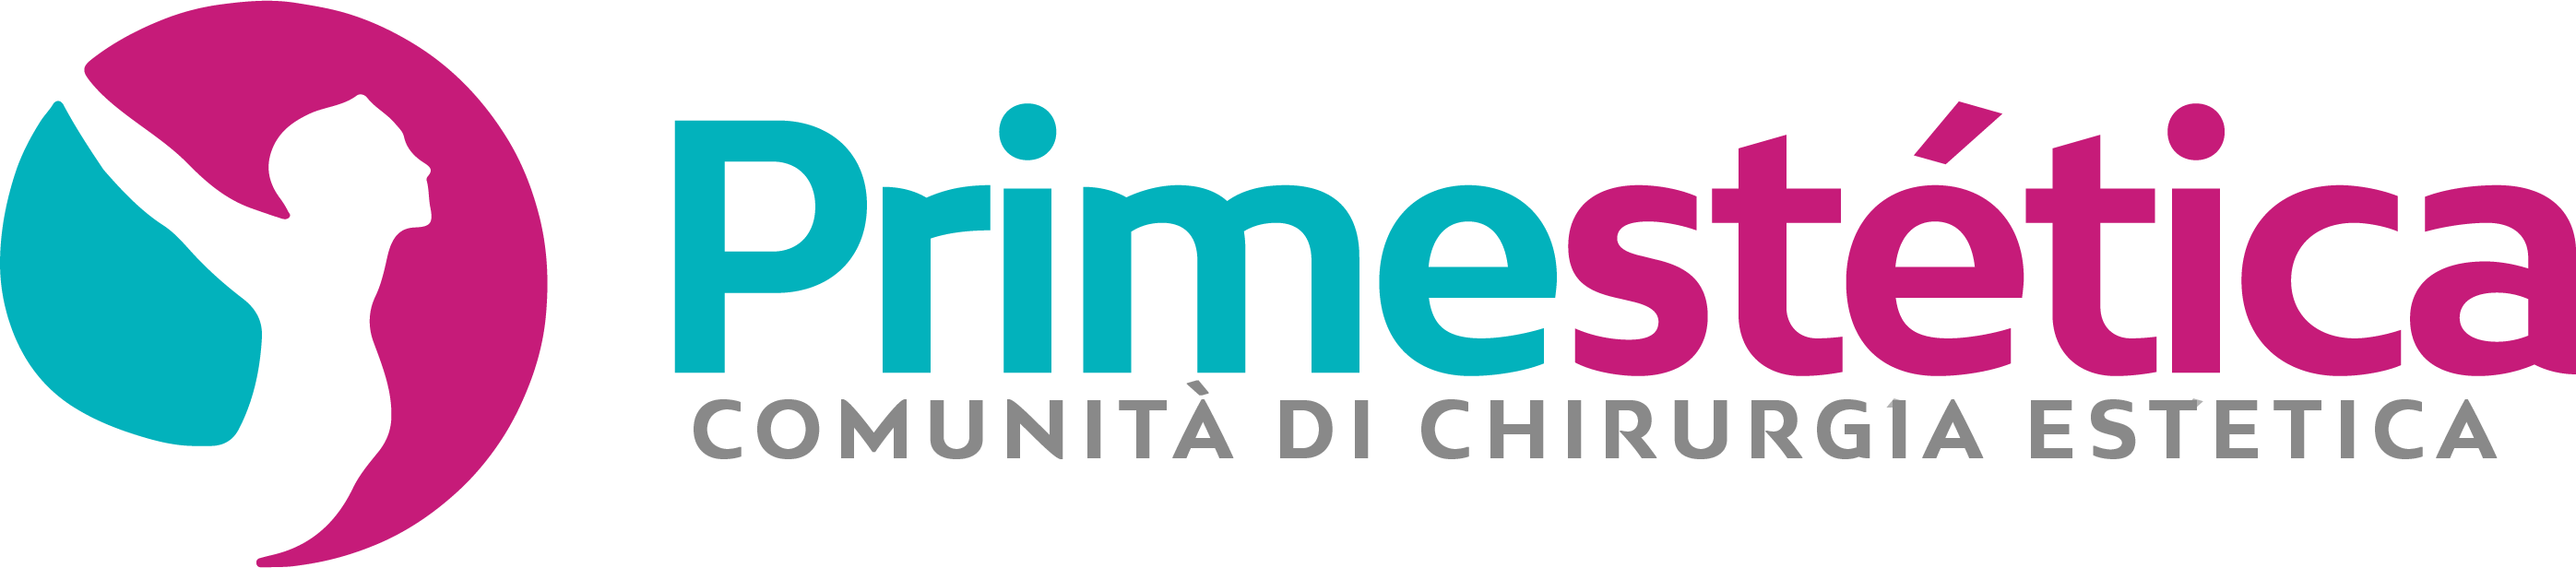 primestetica logo